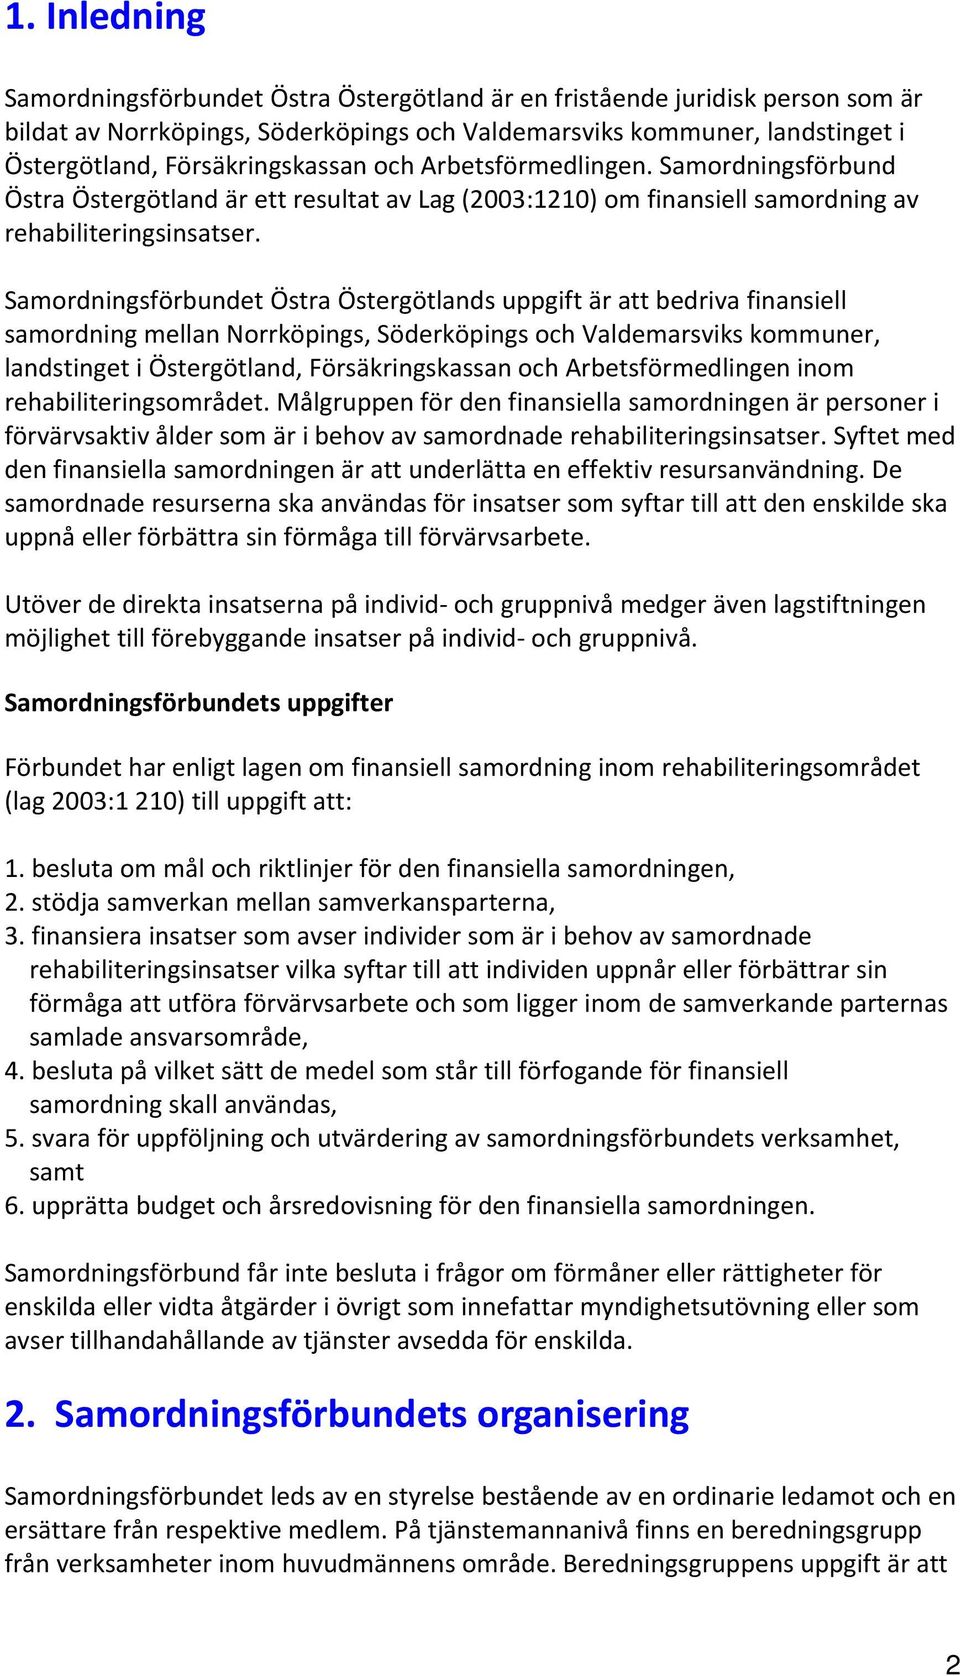 Samordningsförbundet Östra Östergötlands uppgift är att bedriva finansiell samordning mellan Norrköpings, Söderköpings och Valdemarsviks kommuner, landstinget i Östergötland, Försäkringskassan och